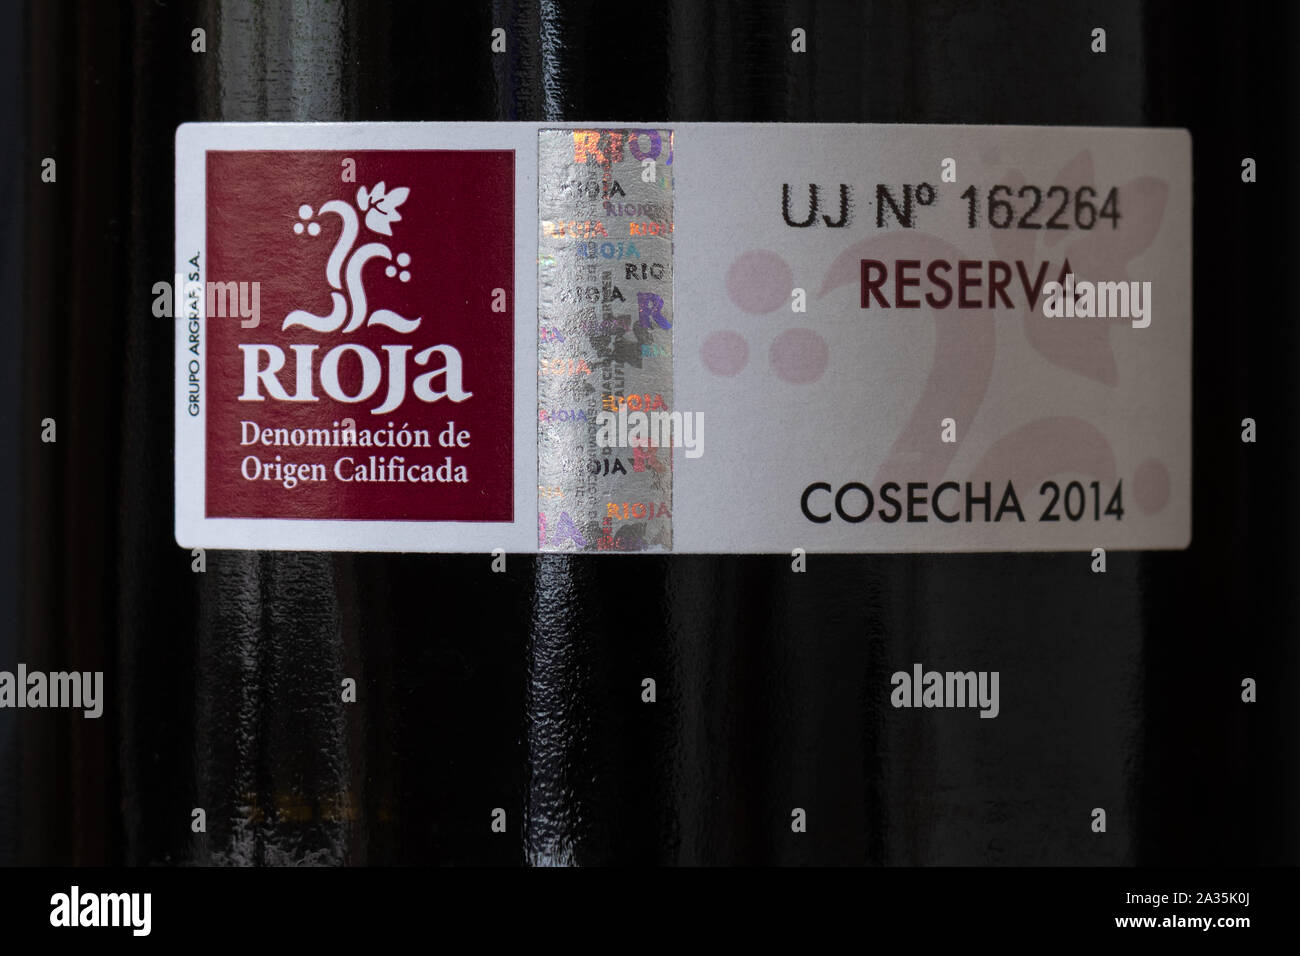 Rioja altern Einstufung und Wein Qualitätssicherung Etikett auf einer Flasche Rioja reserva Wein Stockfoto